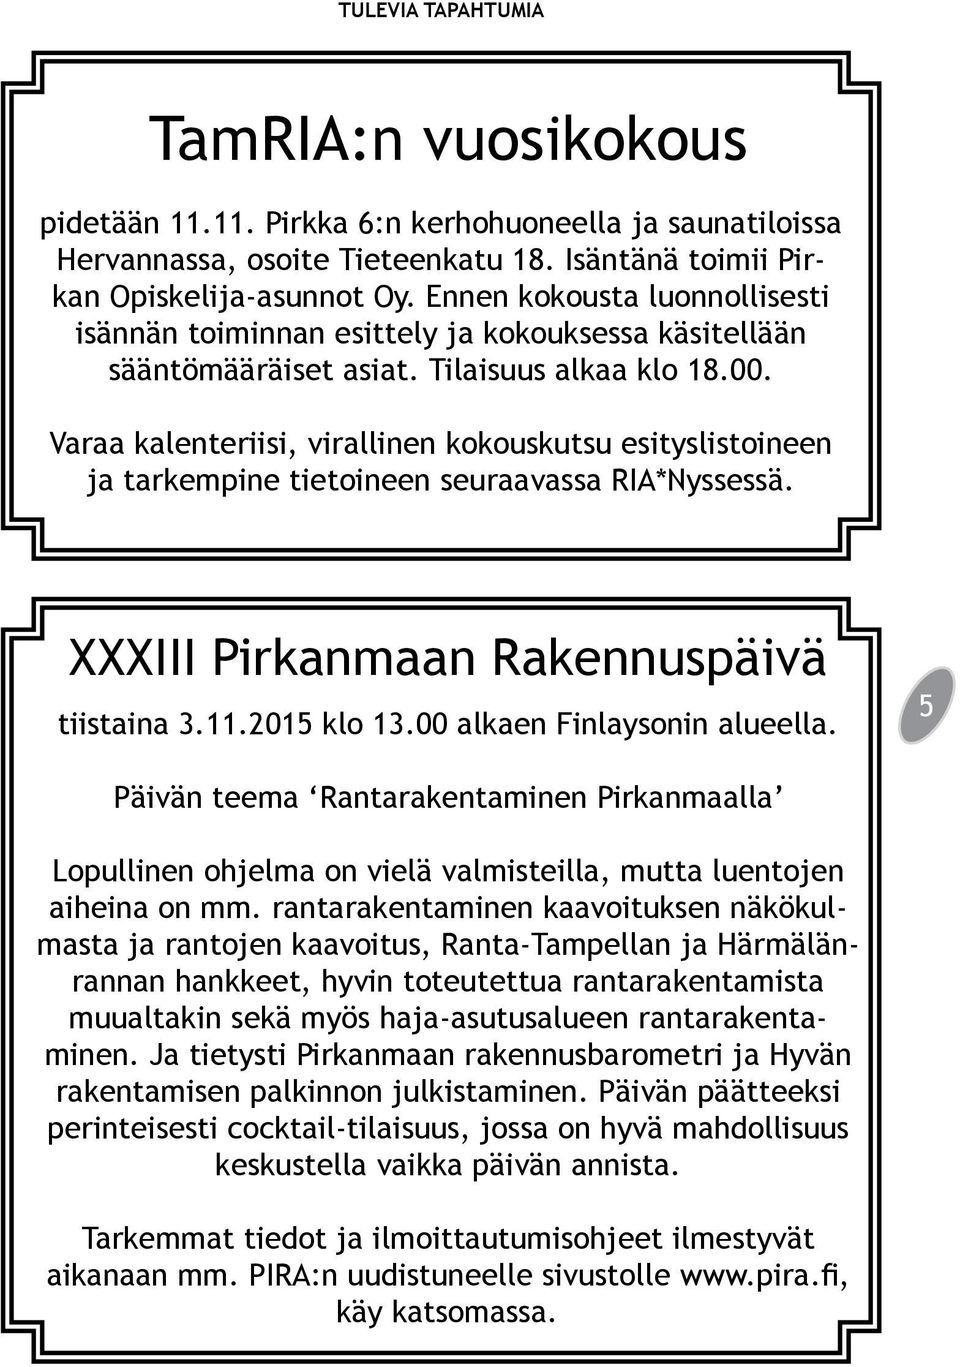 Varaa kalenteriisi, virallinen kokouskutsu esityslistoineen ja tarkempine tietoineen seuraavassa RIA*Nyssessä. XXXIII Pirkanmaan Rakennuspäivä tiistaina 3.11.2015 klo 13.